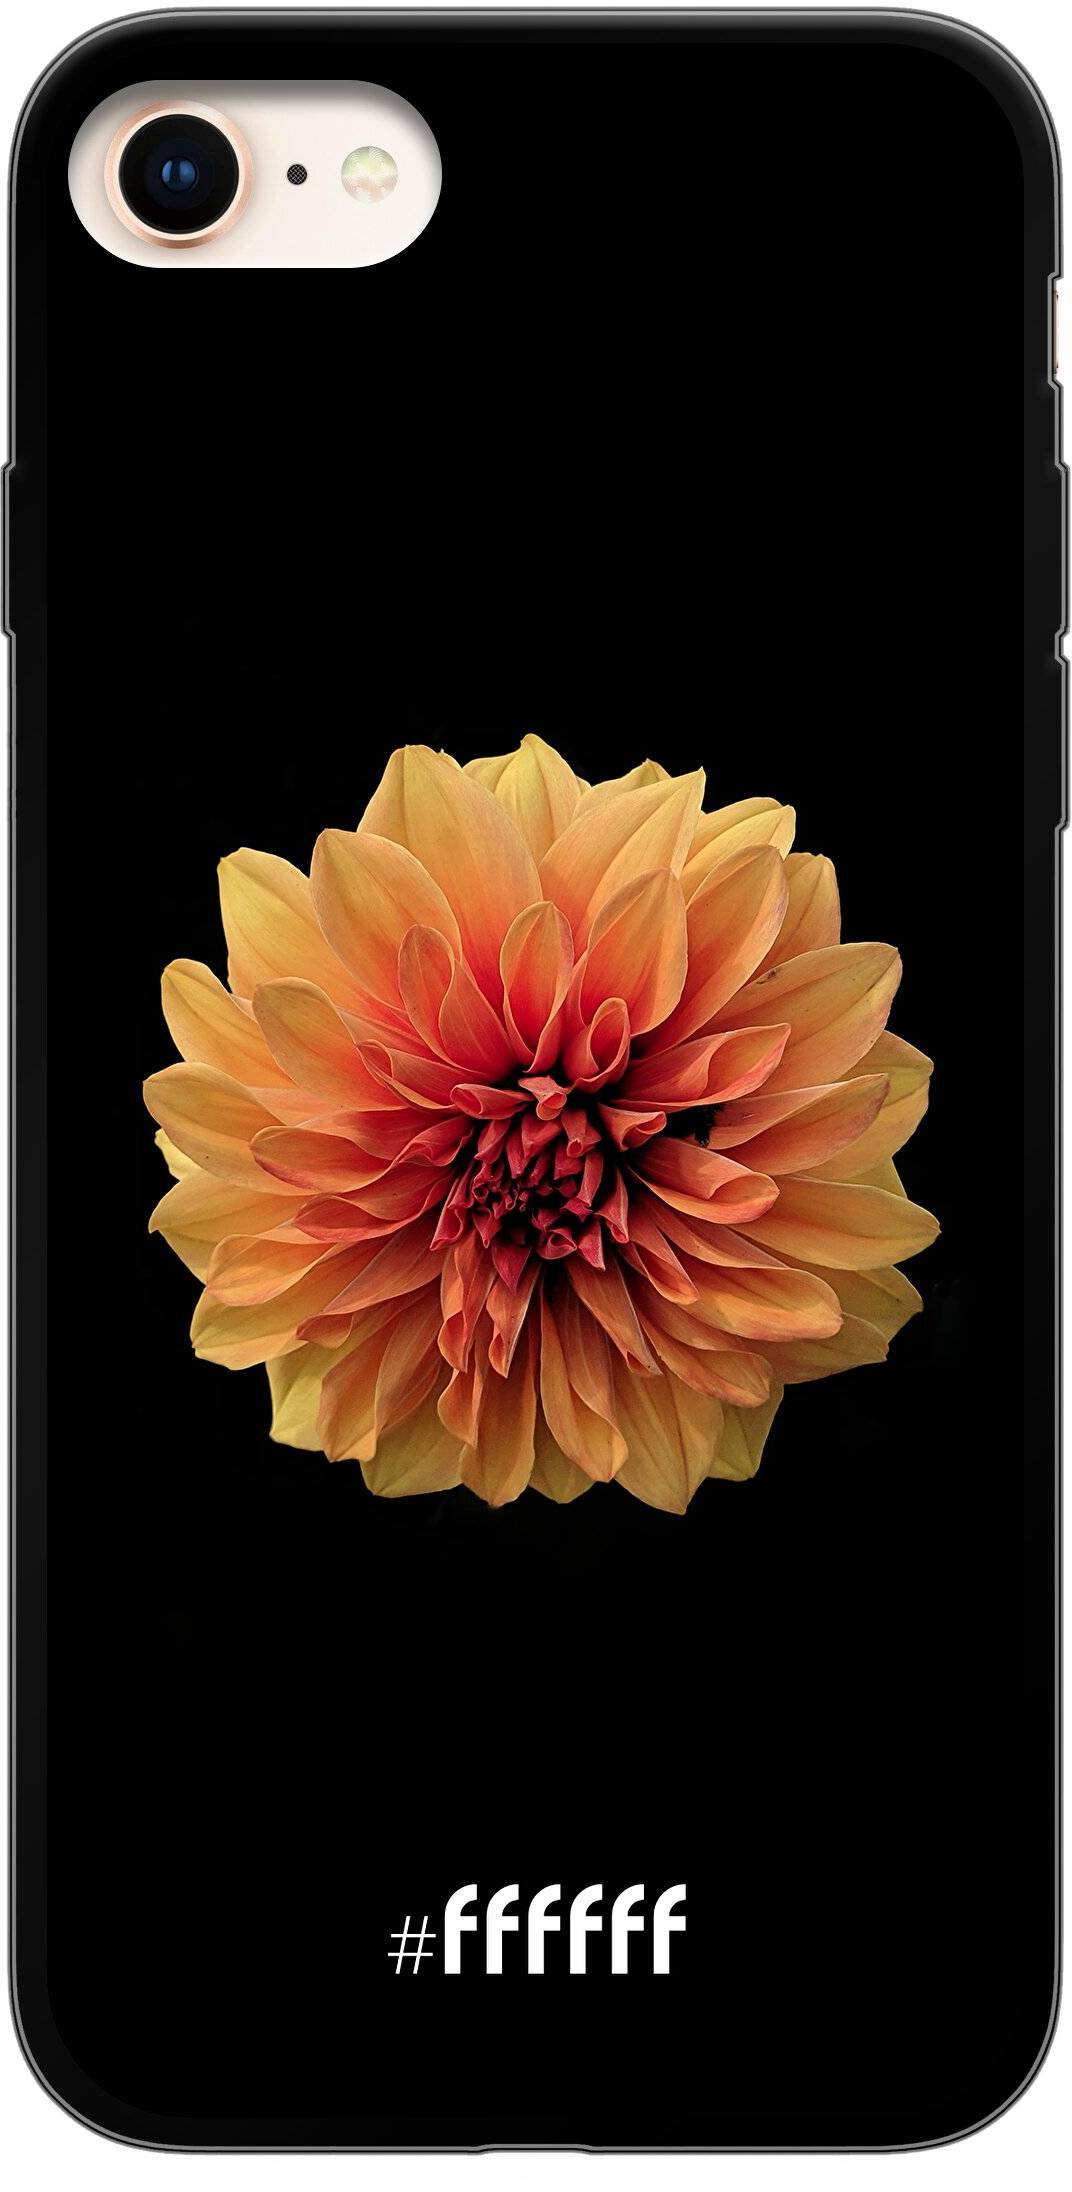 Butterscotch Blossom iPhone 7